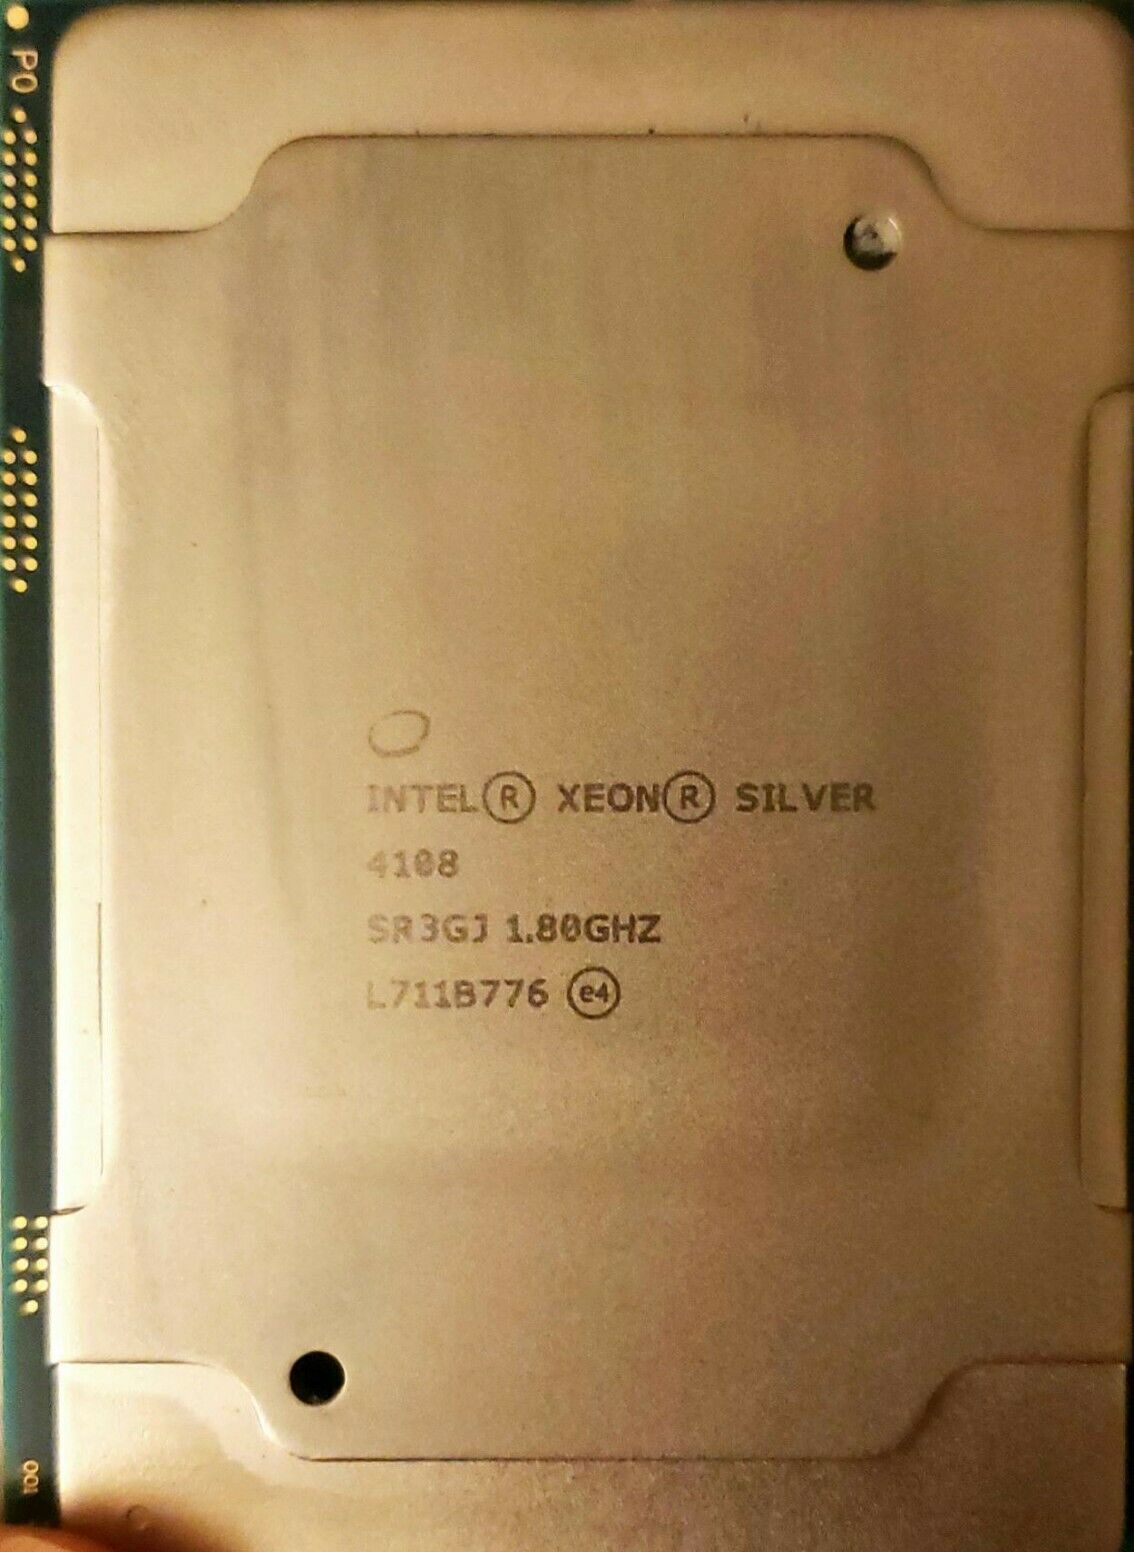 INTEL XEON SILVER 4108 CPU PROCESSOR 8 CORE 1.80GHZ 11MB L3 CACHE 85W SR3GJ